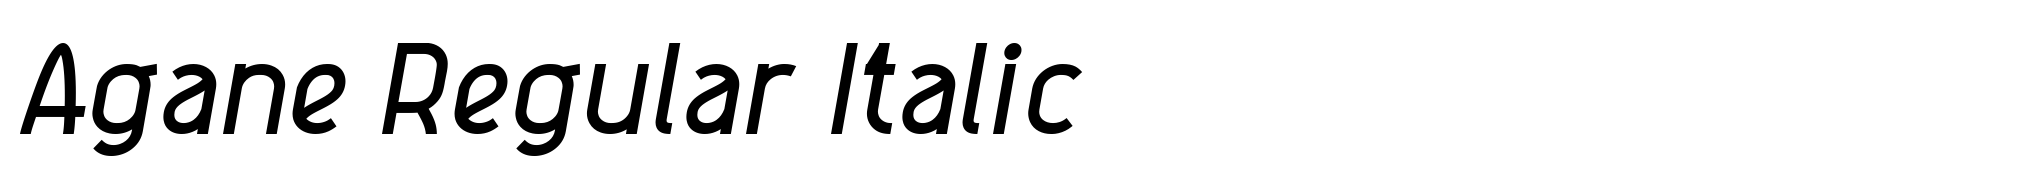 Agane Regular Italic image